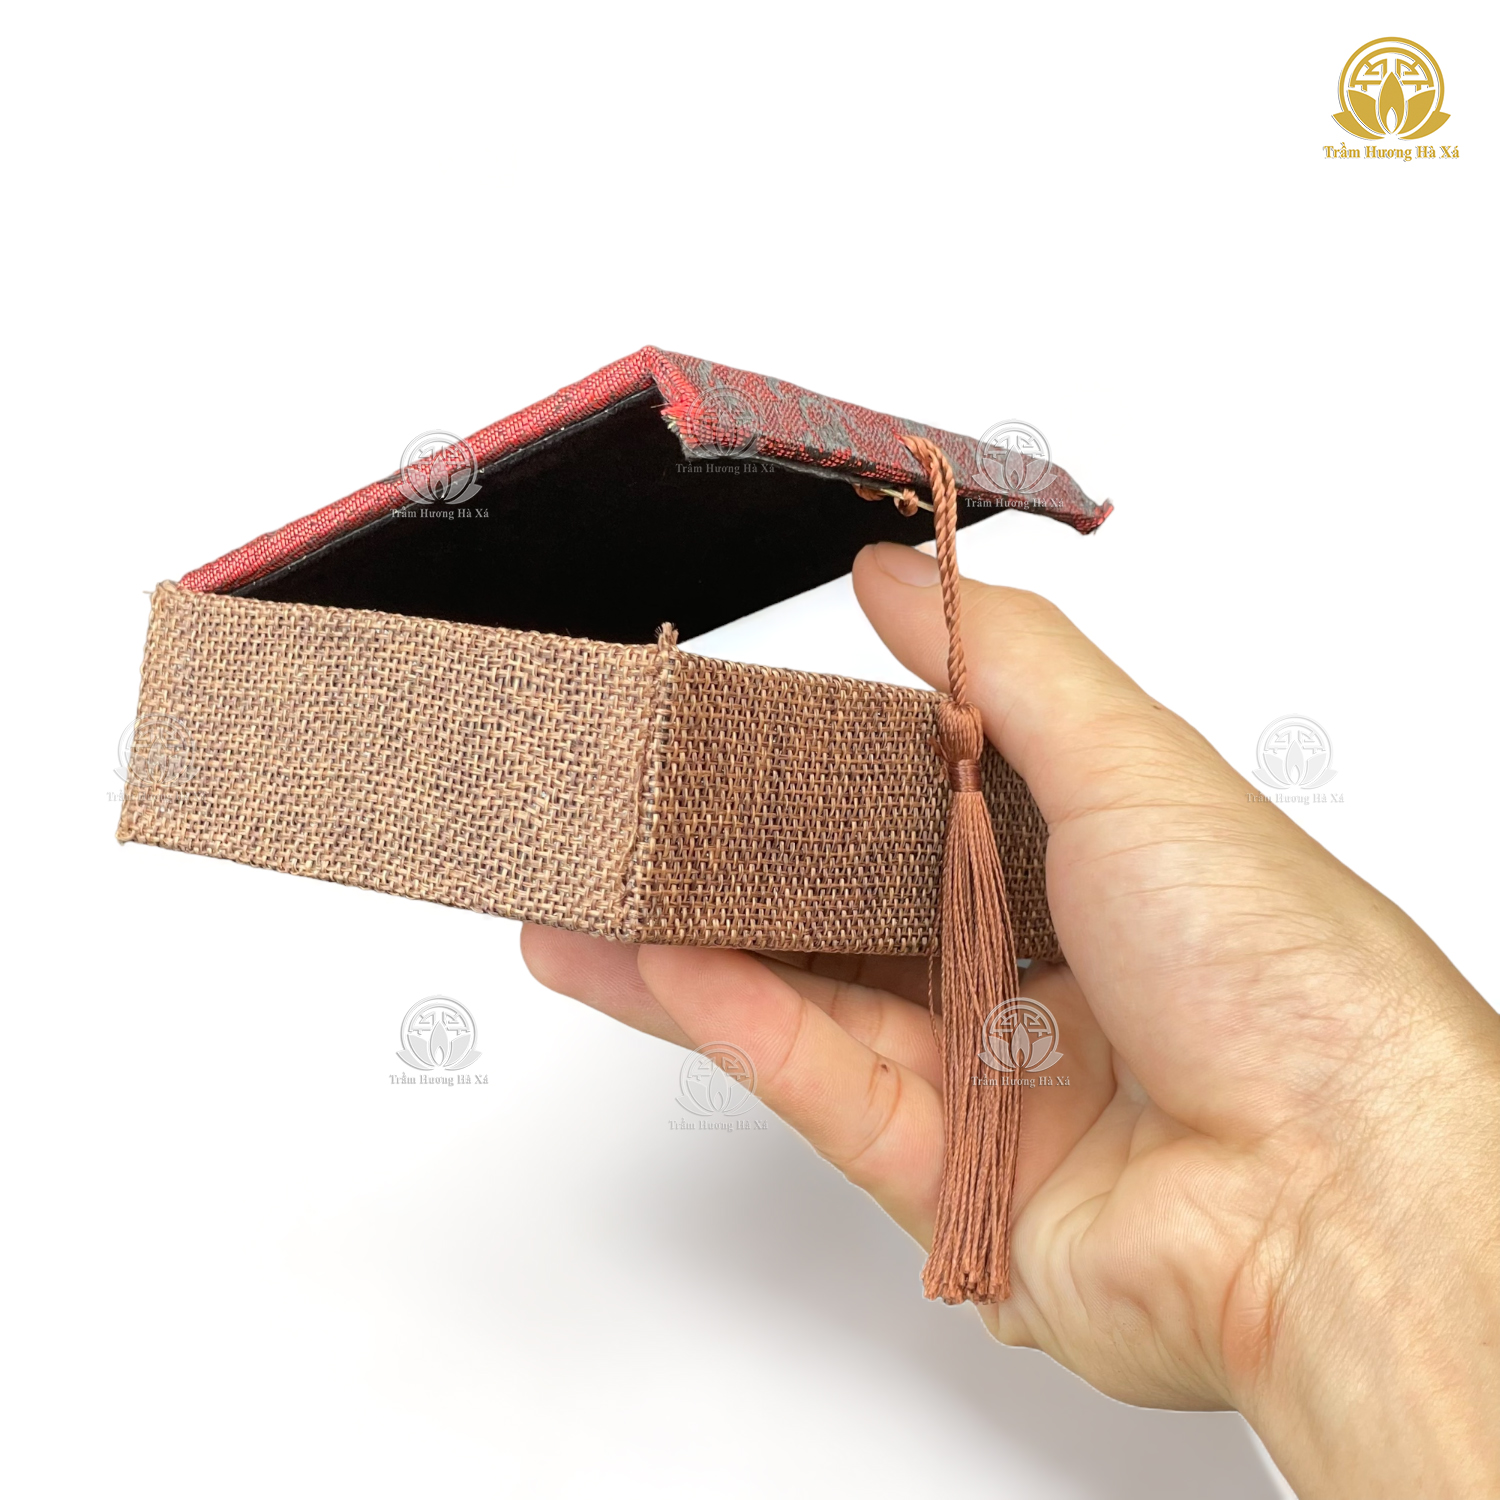 Hộp gấm đựng vòng tay phong thủy trang sức trầm hương HÀ XÁ bảo quản hộp quà đẹp chắc chắn 10x10x4cm